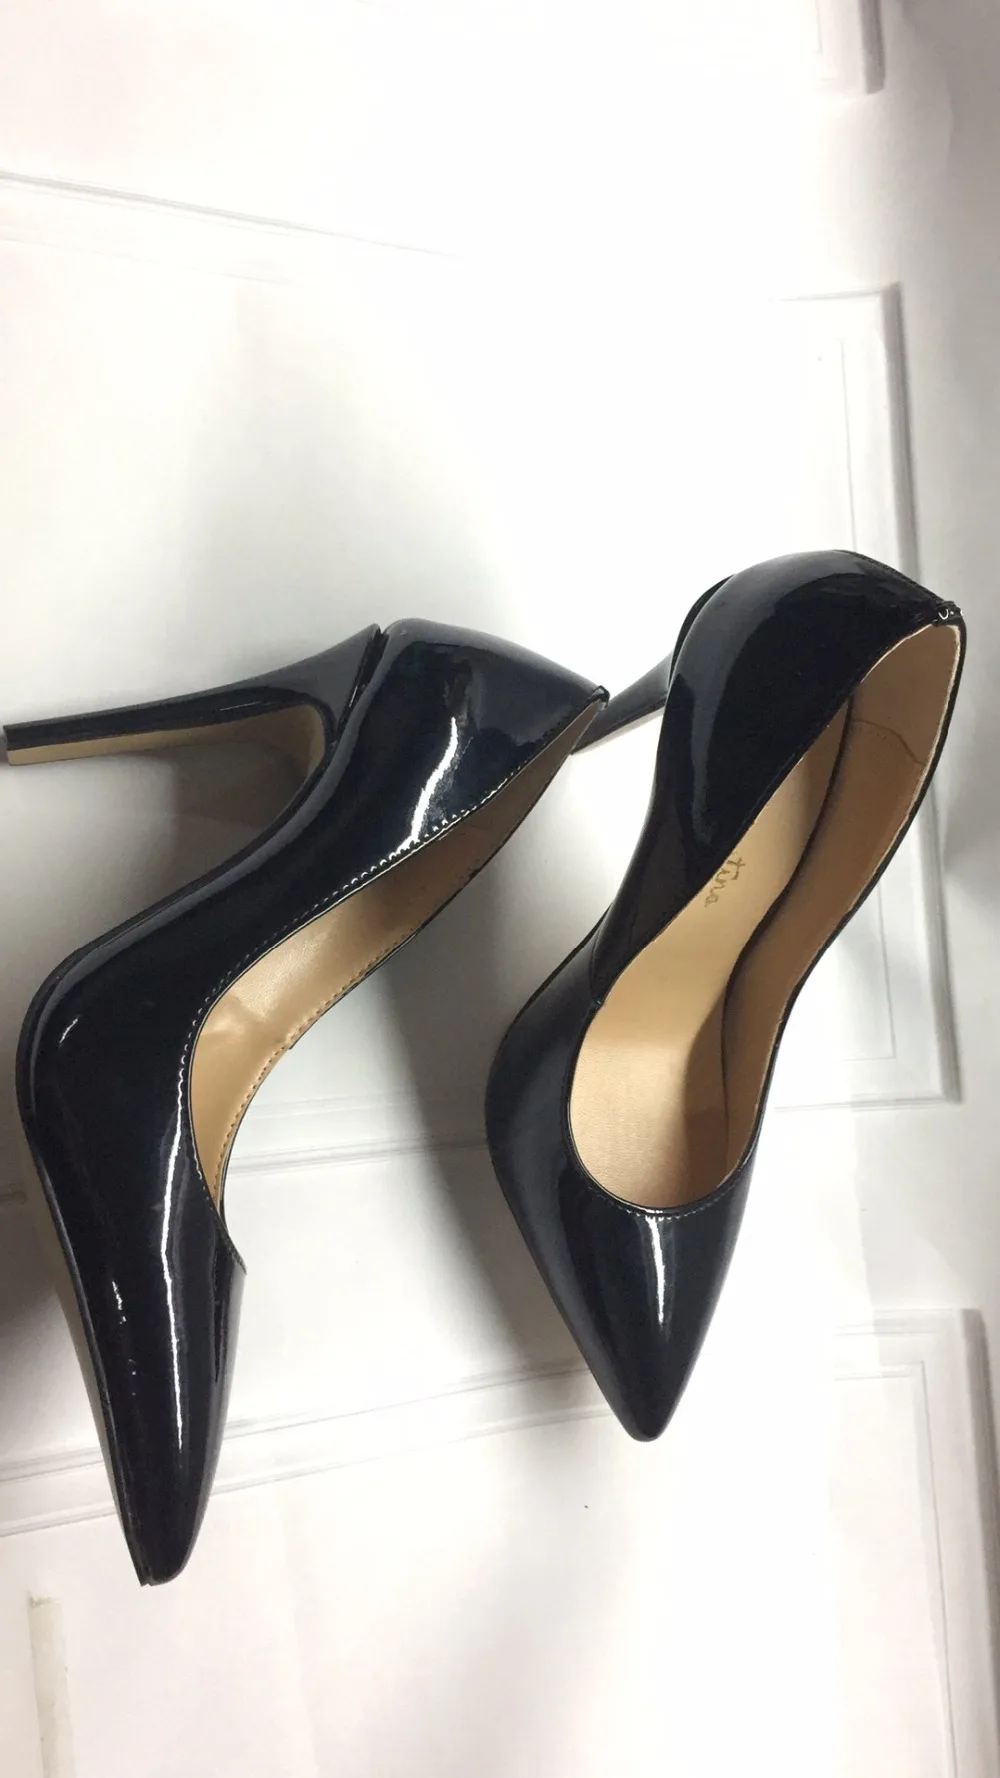 Macytino/офисные женские туфли-лодочки из черной лакированной кожи, женские офисные туфли на высоком каблуке 10 см с острым носком, модельные